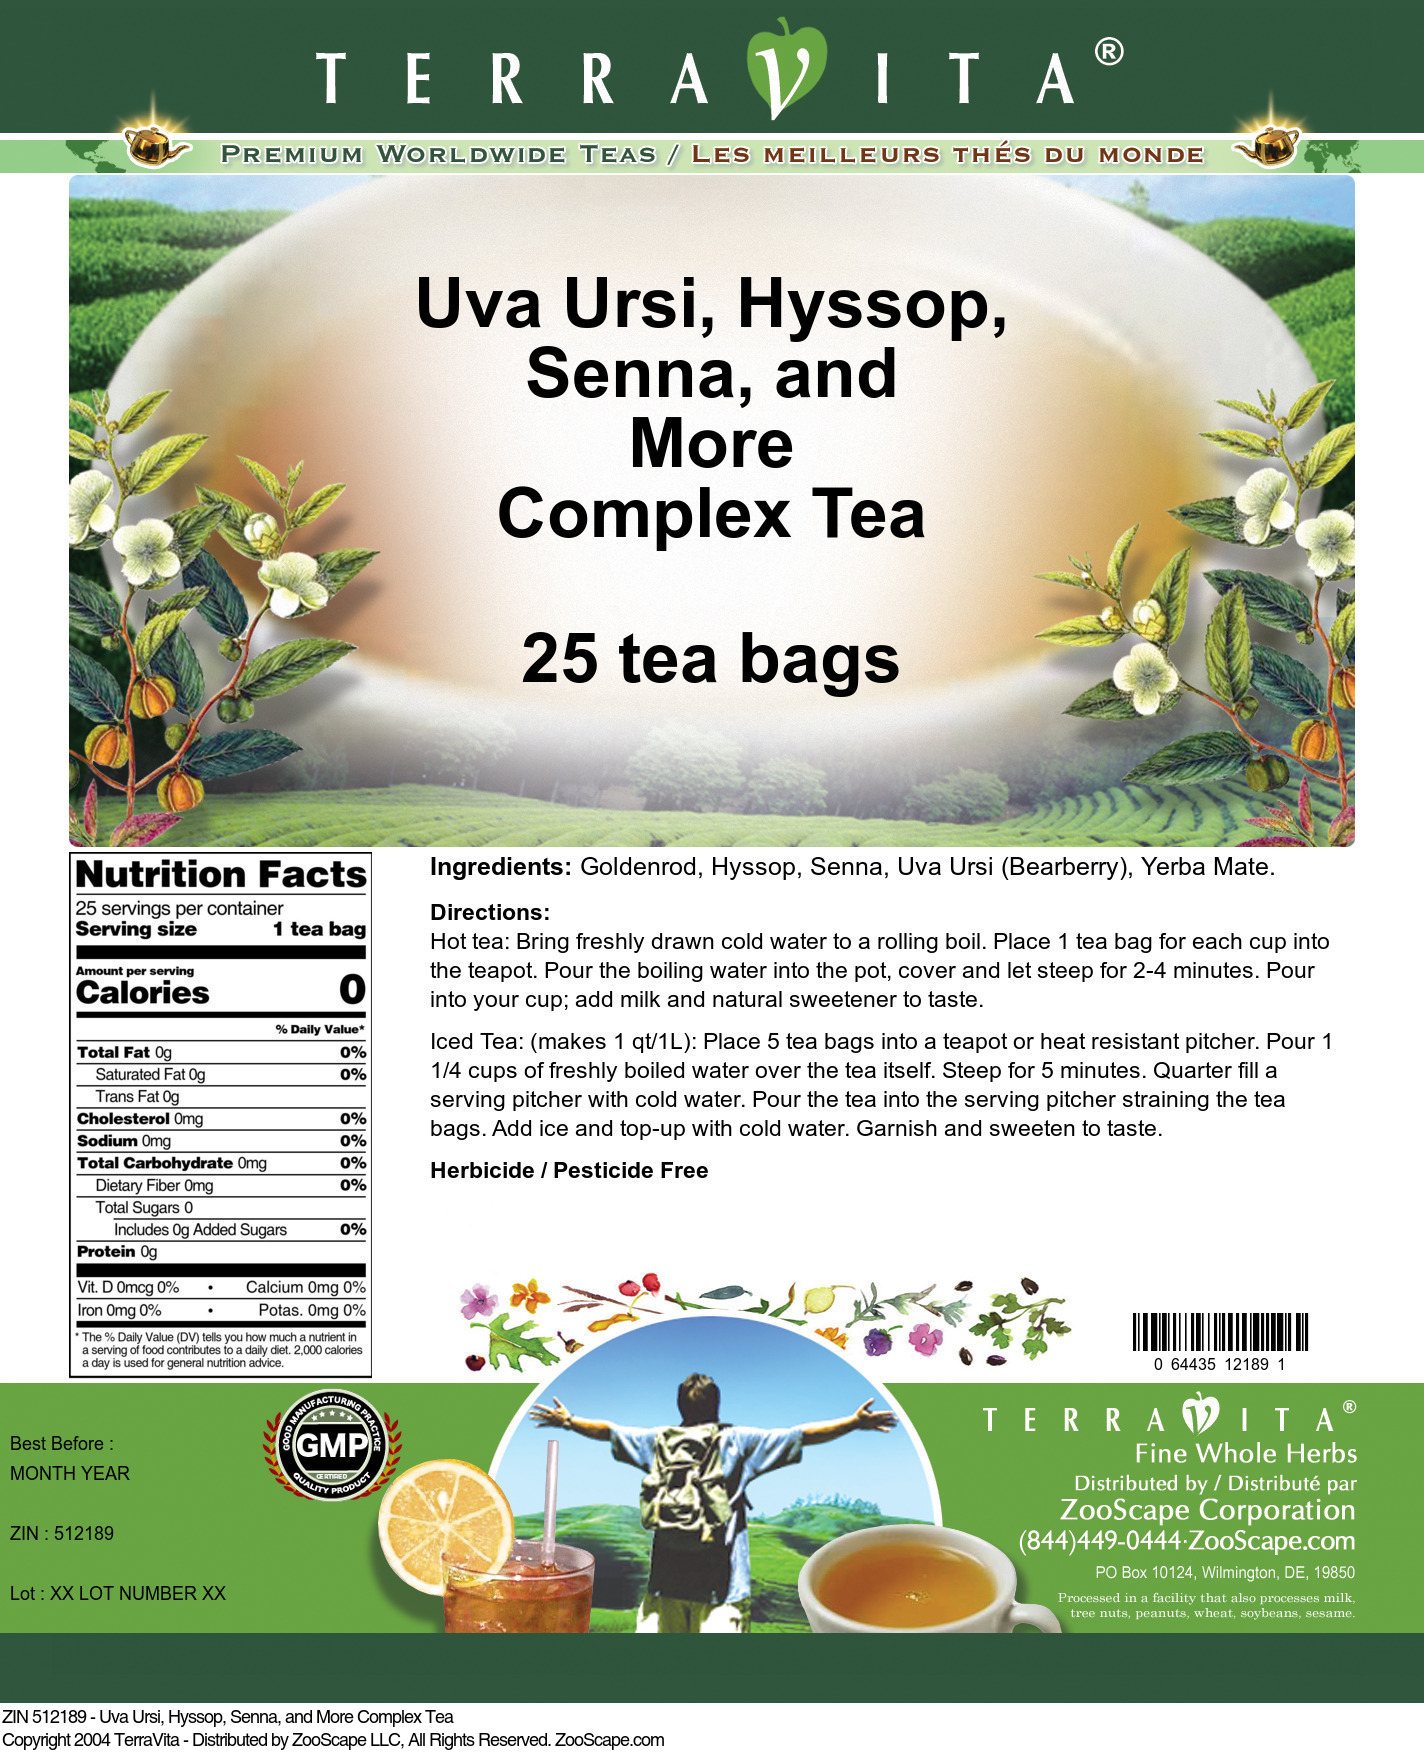 Uva Ursi, Hyssop, Senna, and More Complex Tea - Label